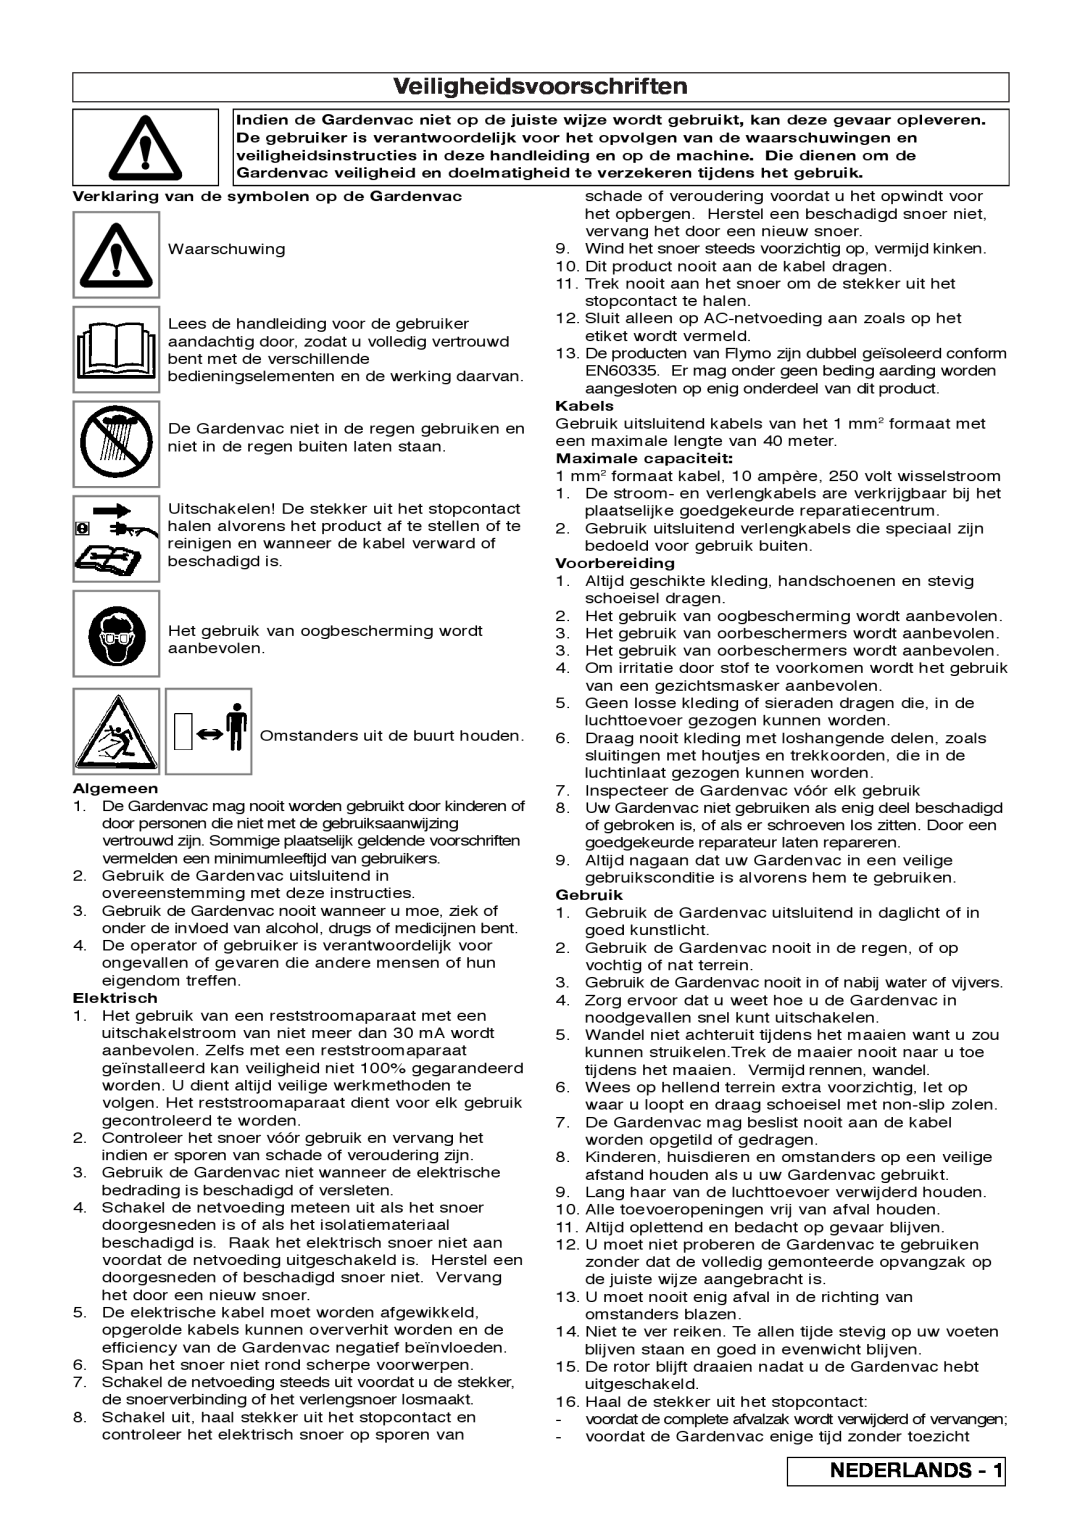 Flymo 2200 Veiligheidsvoorschriften, Nederlands, Verklaring van de symbolen op de Gardenvac, Algemeen, Elektrisch, Kabels 